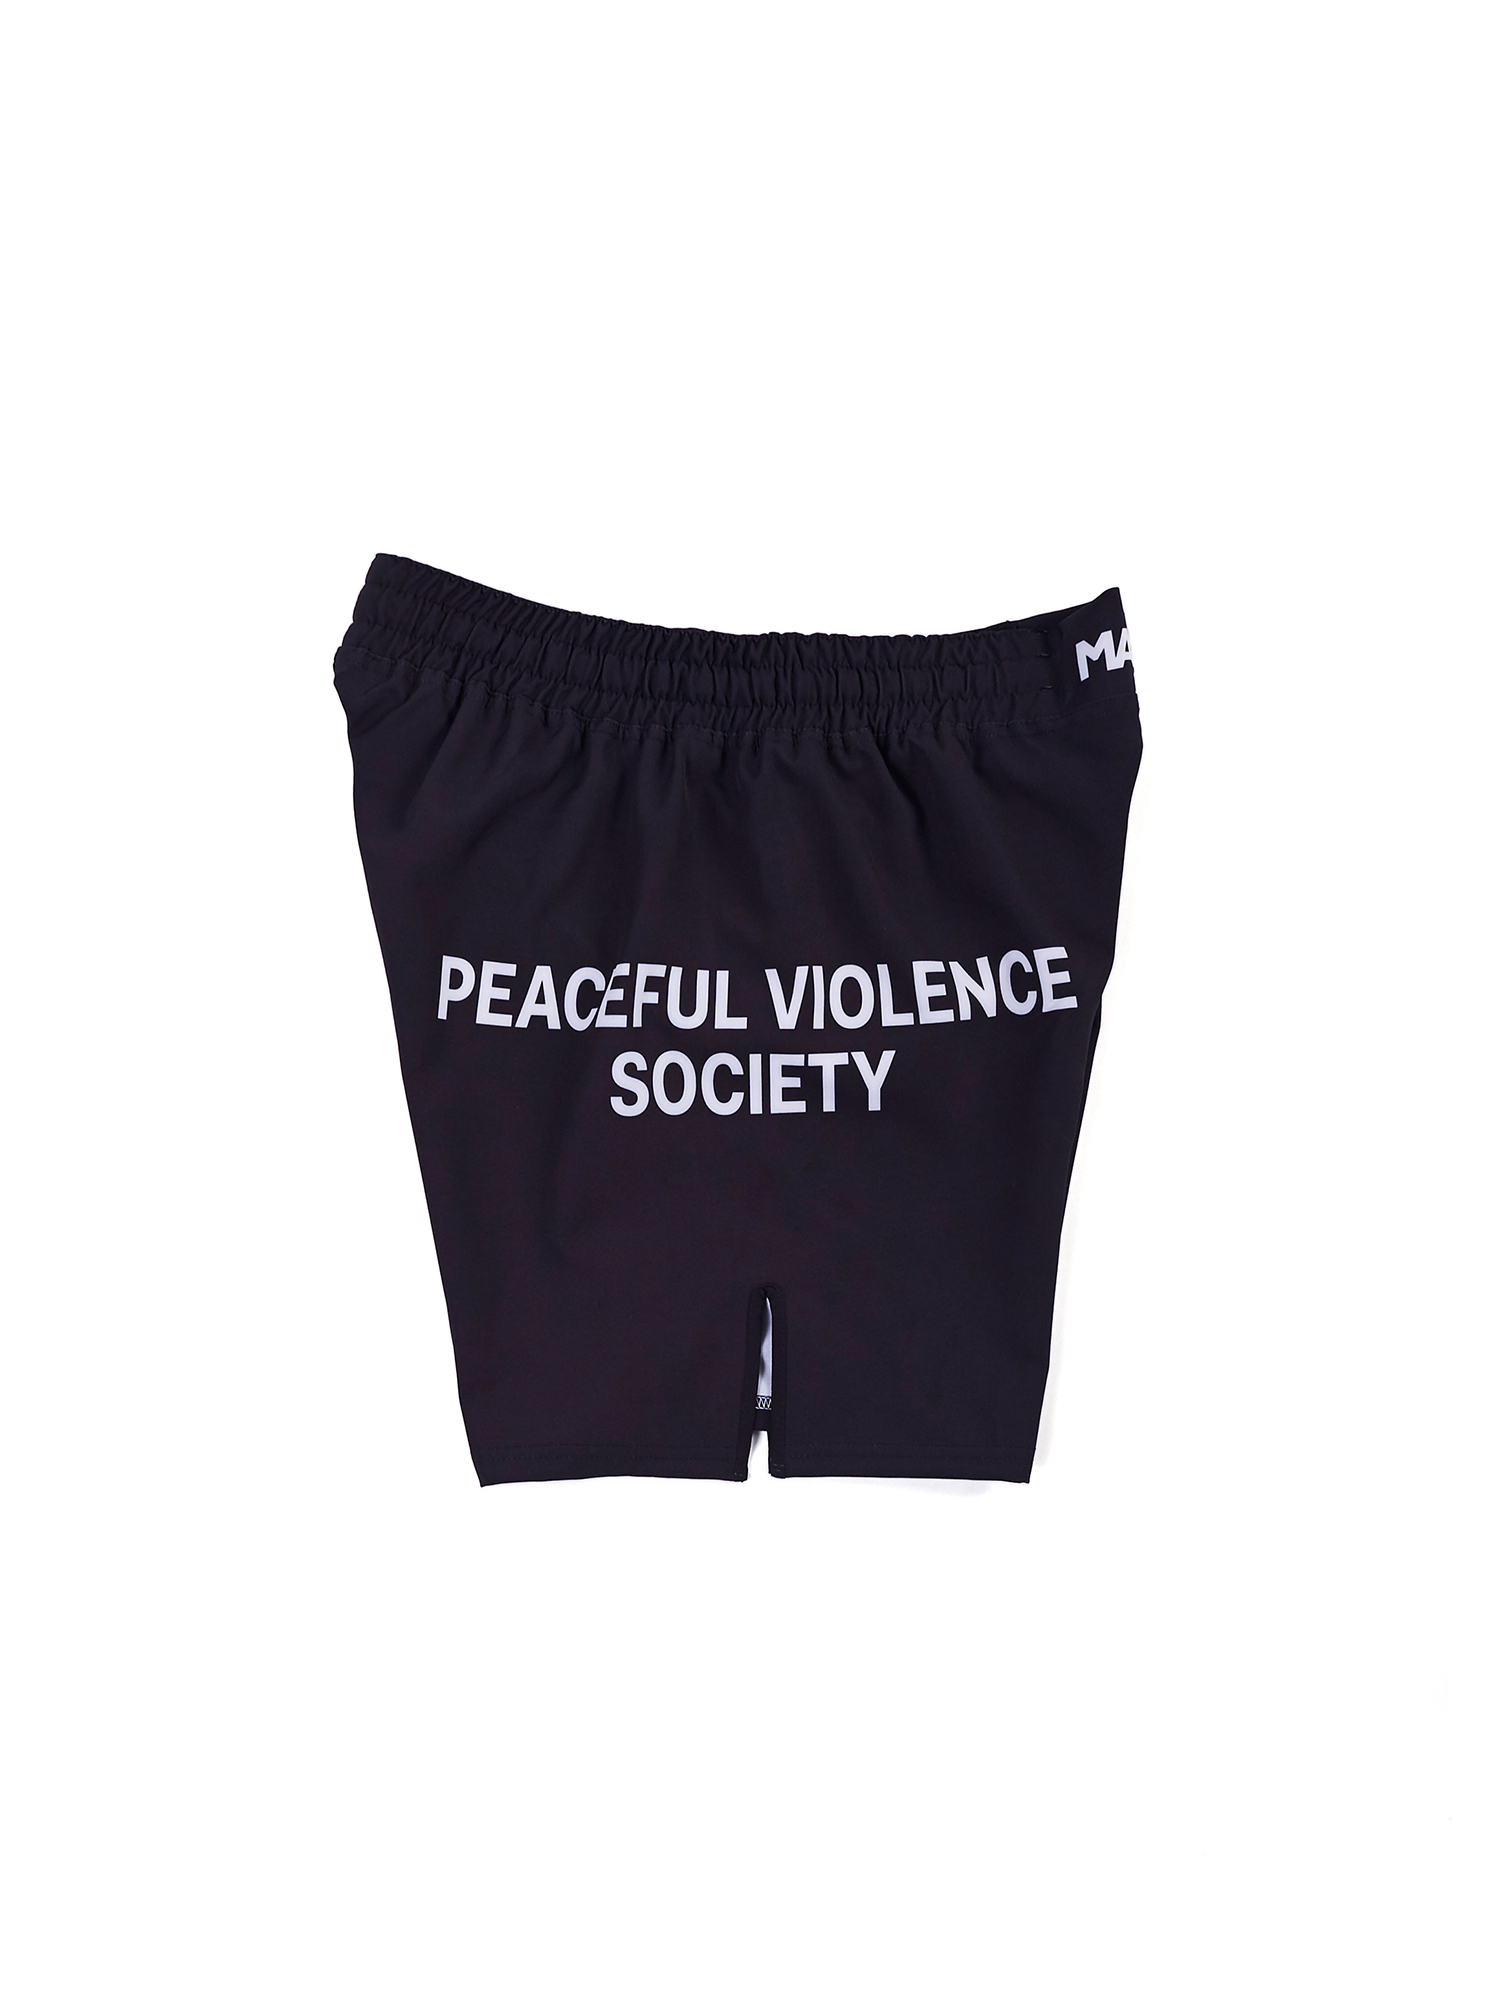 Women's Shorts & Spats – Catholic Fightwear